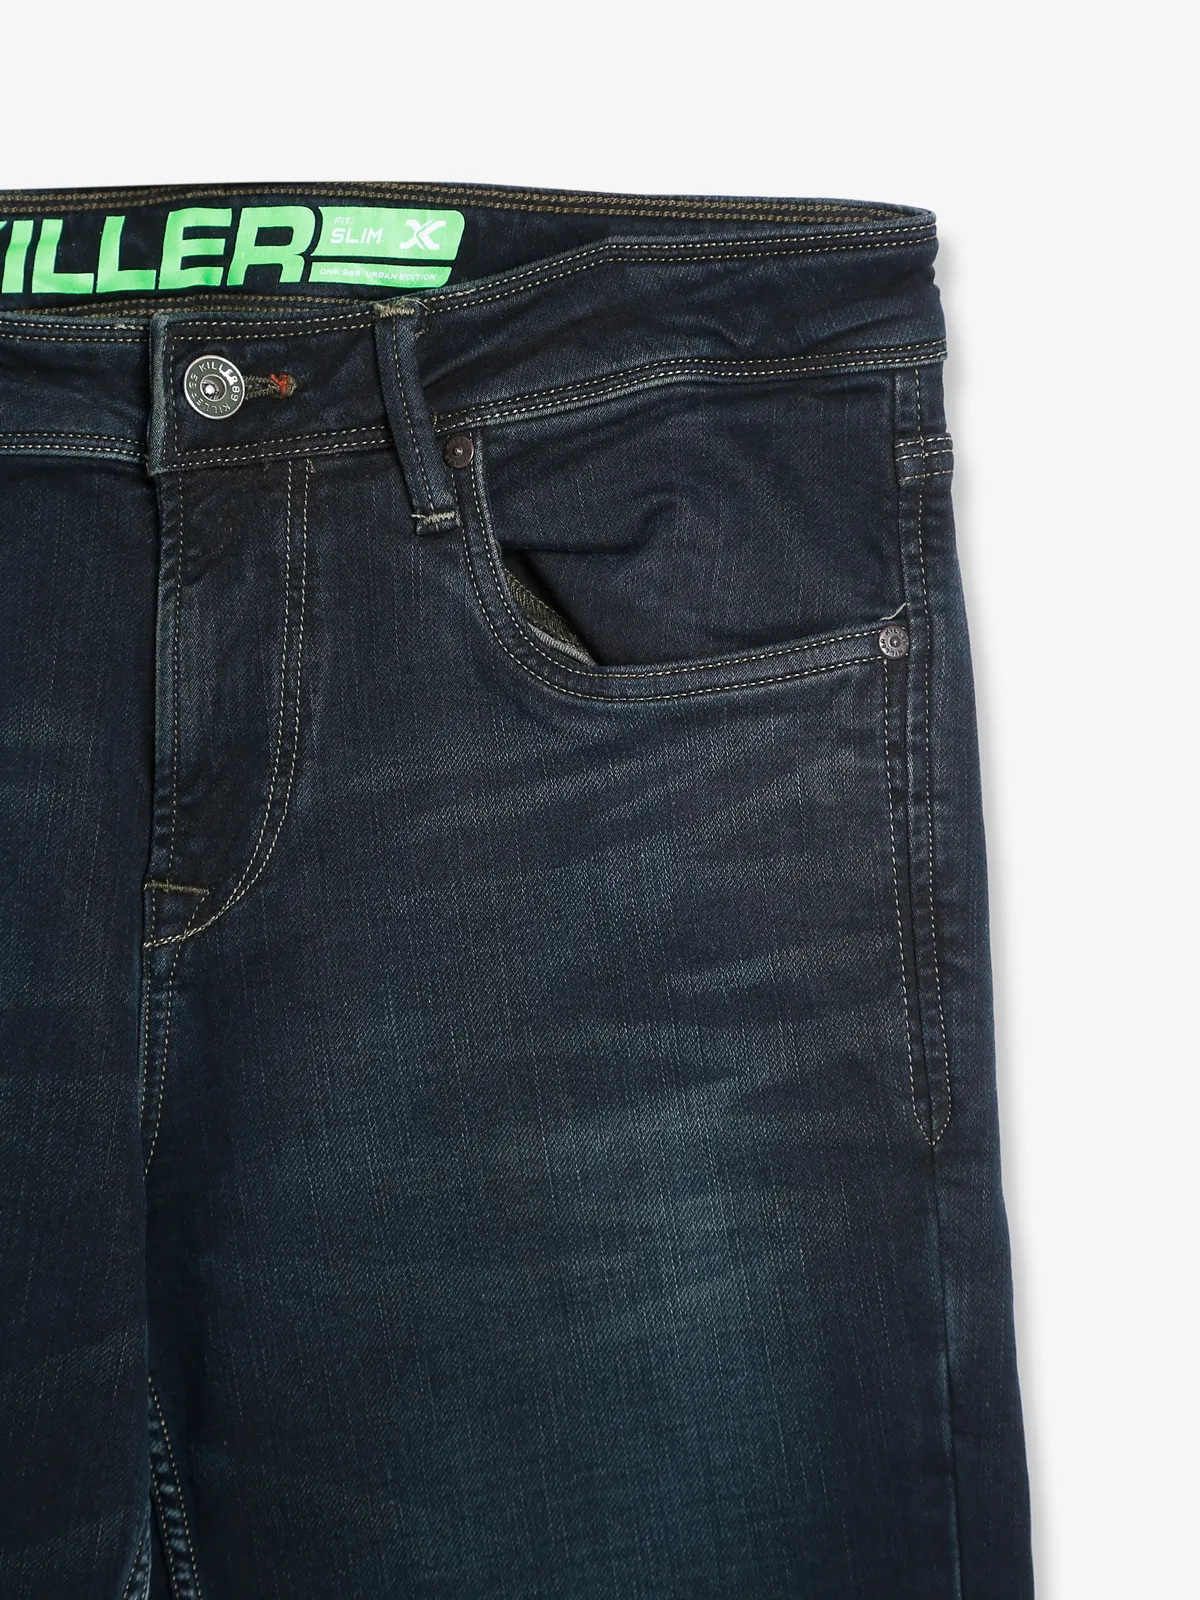 Killer denim black slim fit jeans